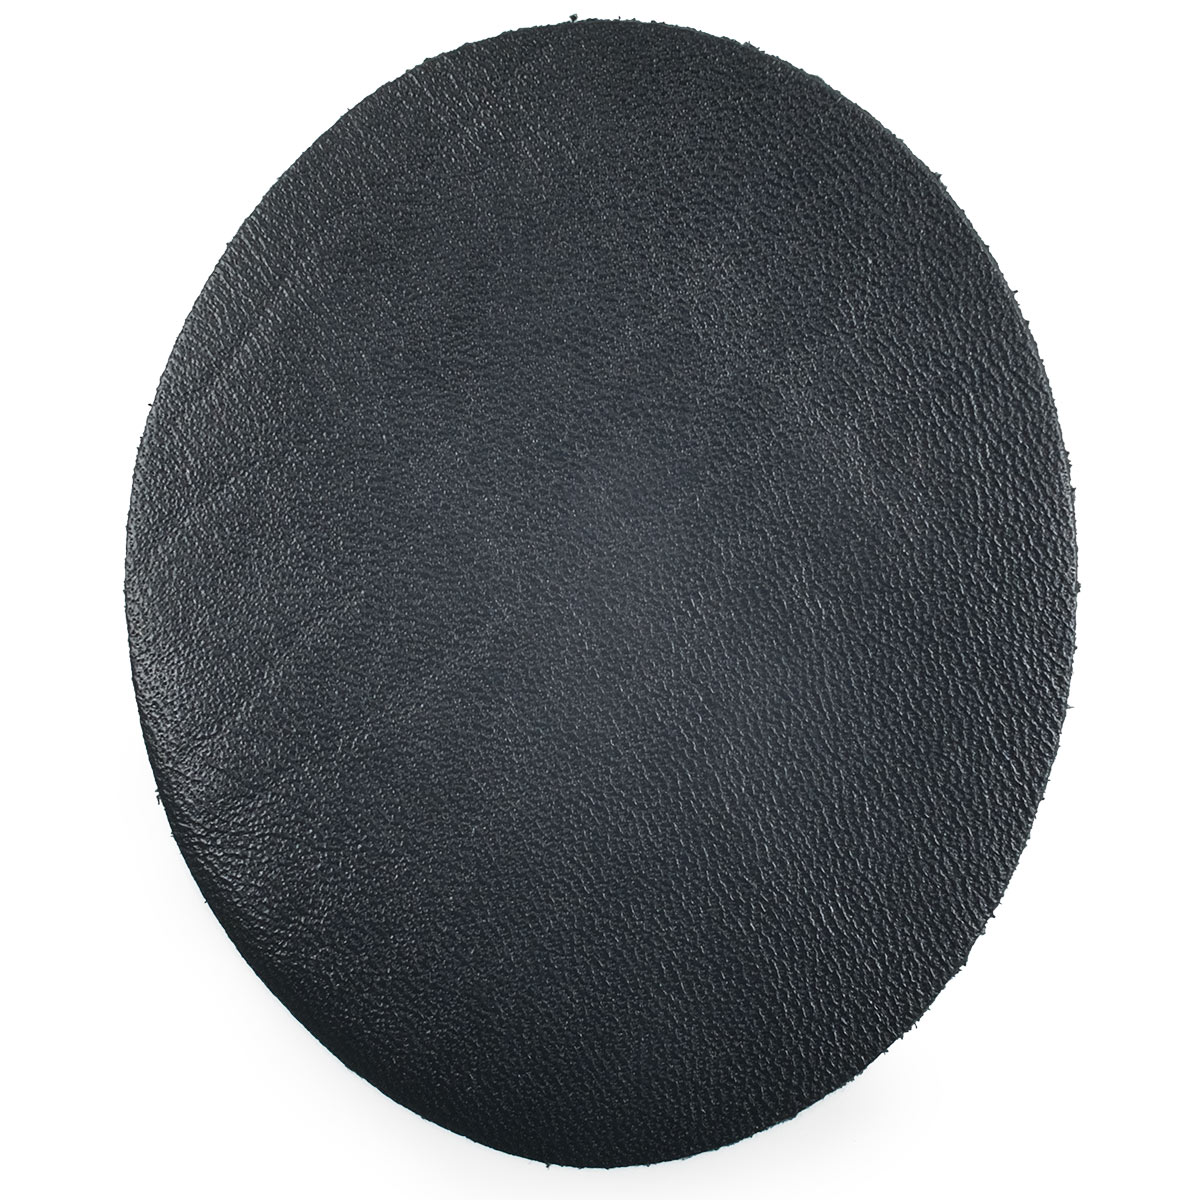 Заплатка термоклеевая Галерея 206, из кожи, овал малый, 9,4*11,4 см, 2 шт (01 черный)